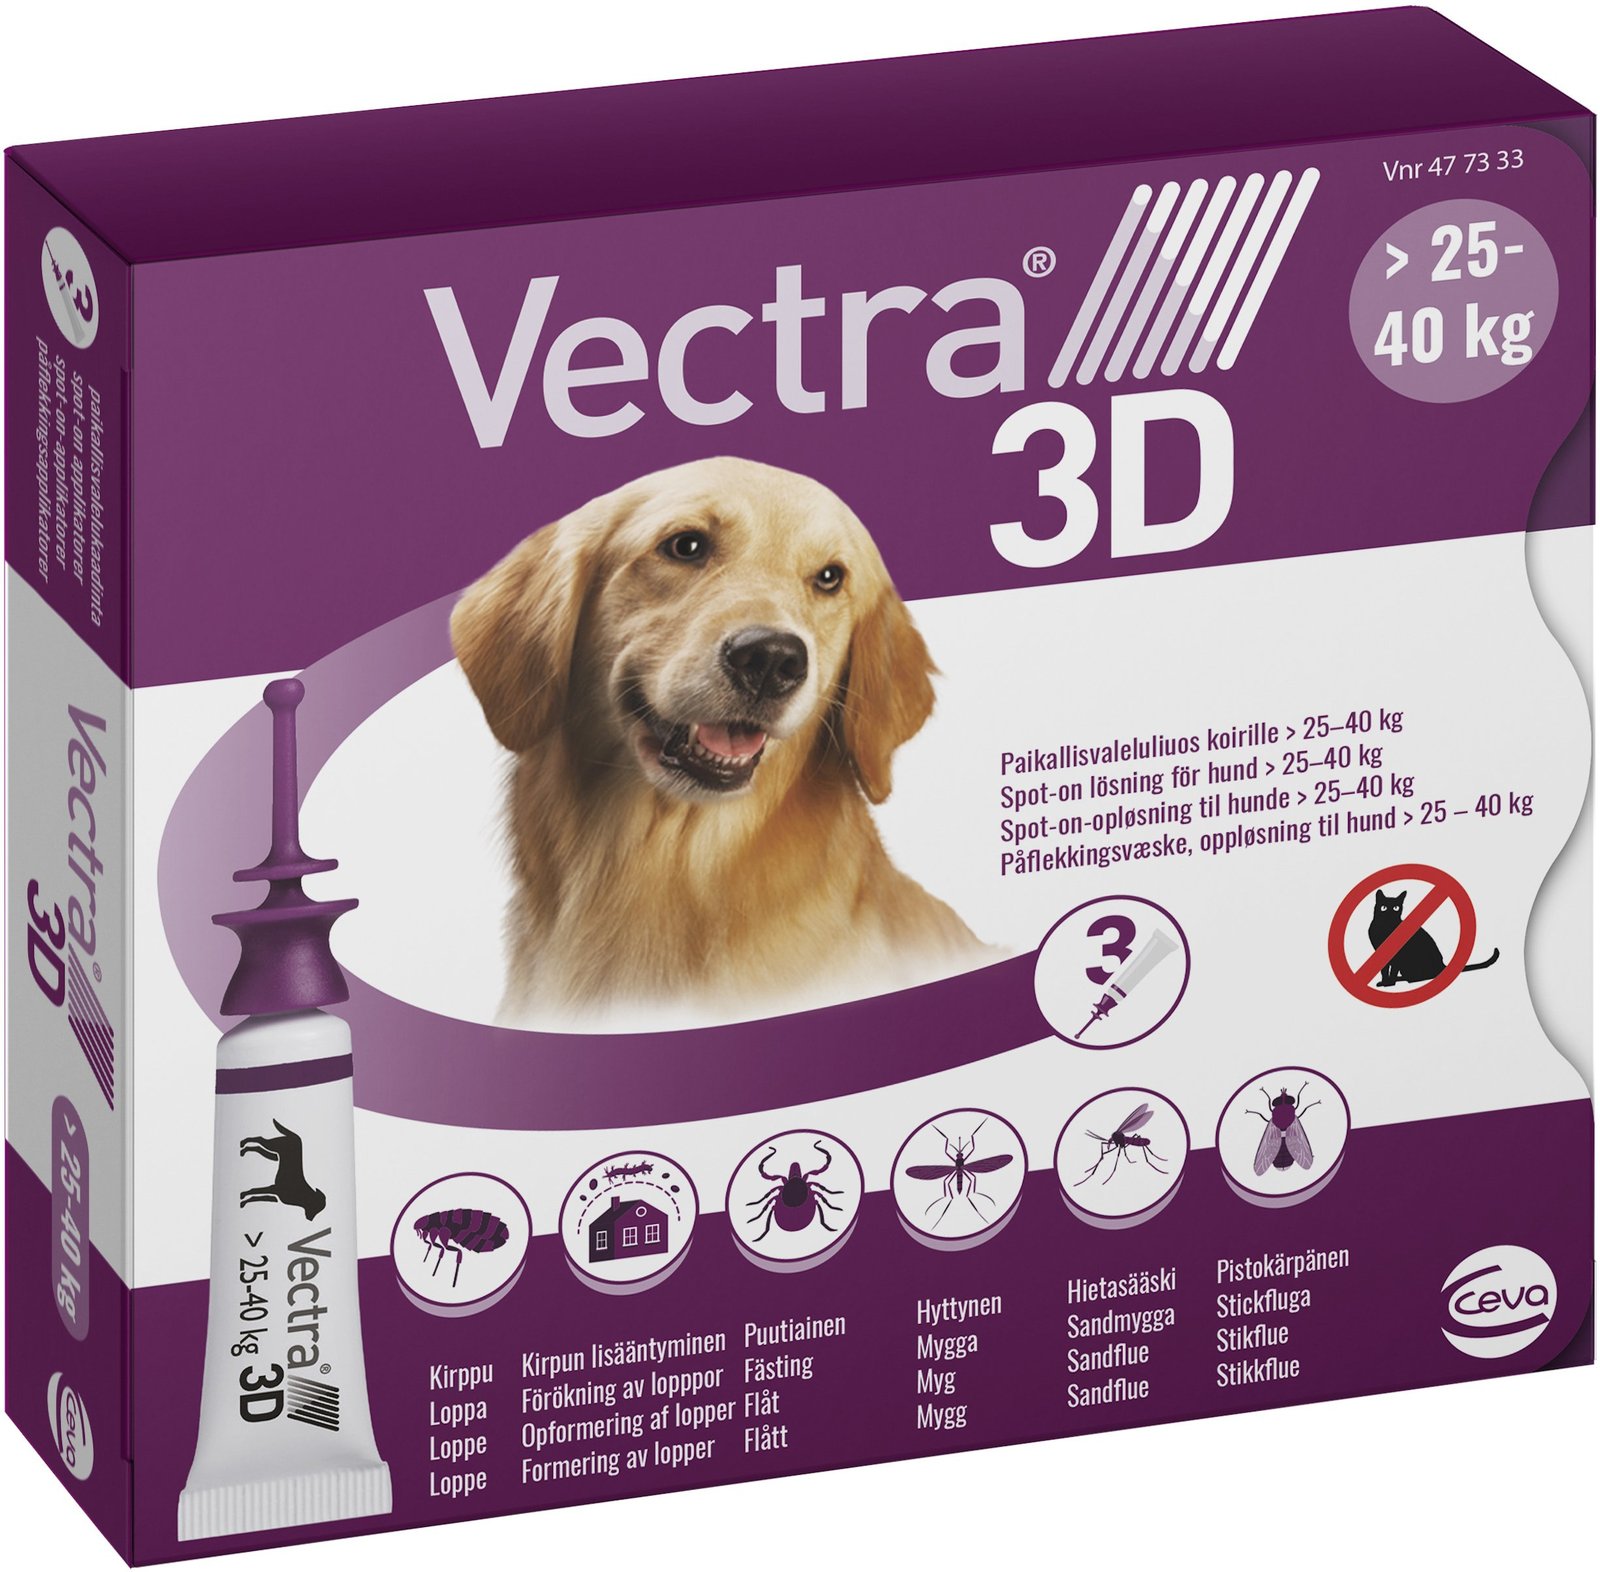 Vectra 3D Hund >25-40 kg Spot-on lösning 3 x 4,7 ml